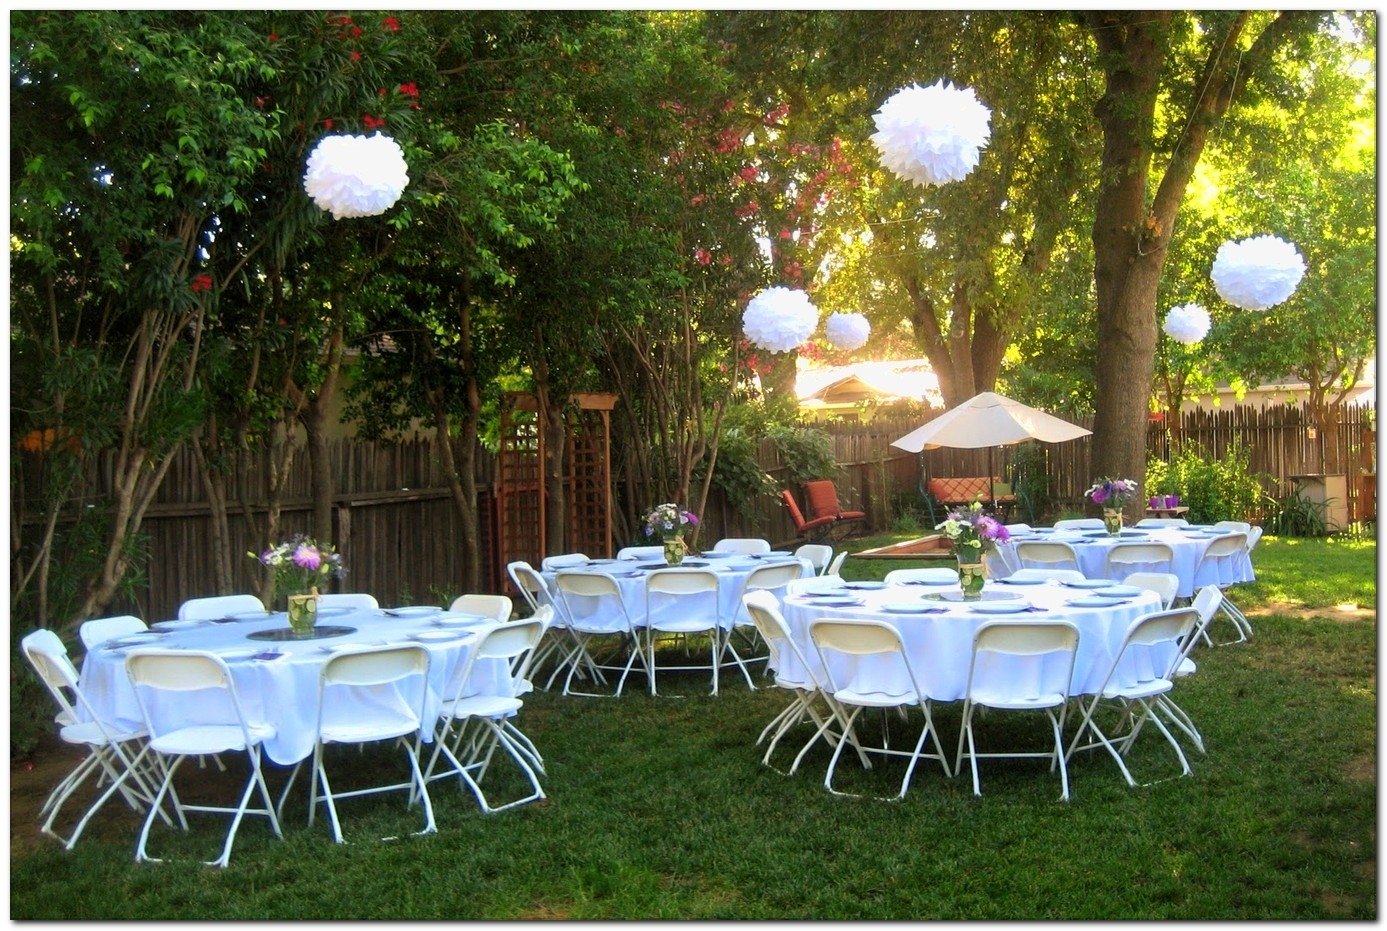 10 Cute Small Wedding Ideas On A Budget breathtaking small backyard wedding ideas on a budget pics ideas 2023